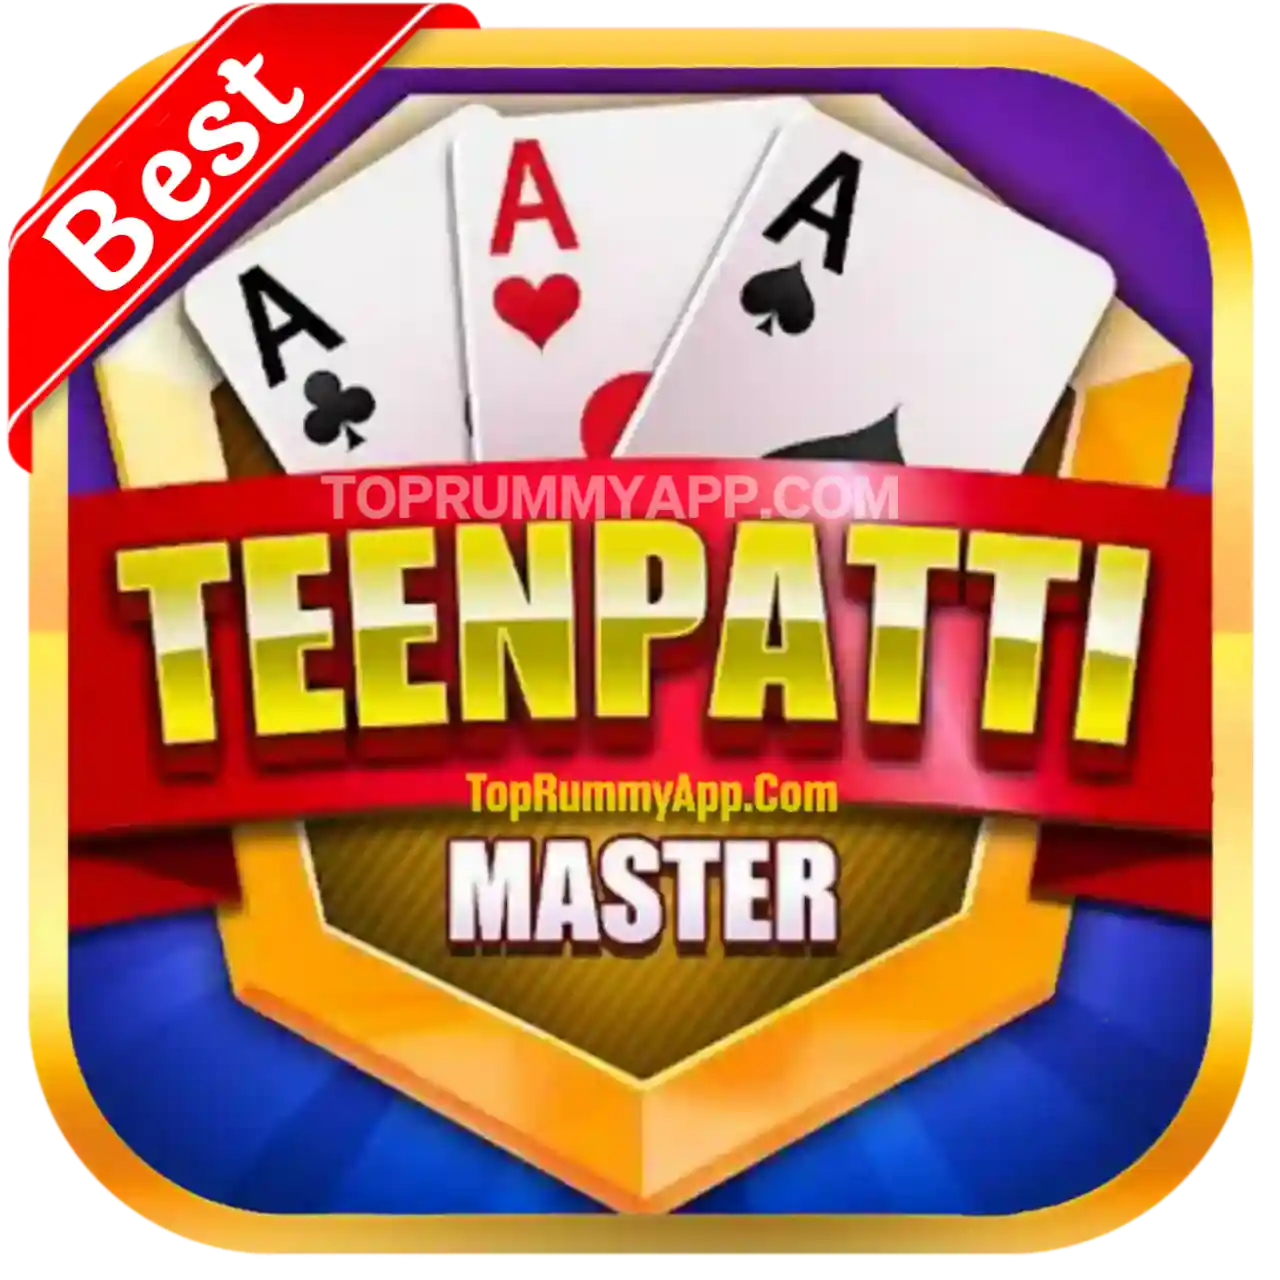 Teen Patti Master App Download - Teen Patti Pop Apk Download